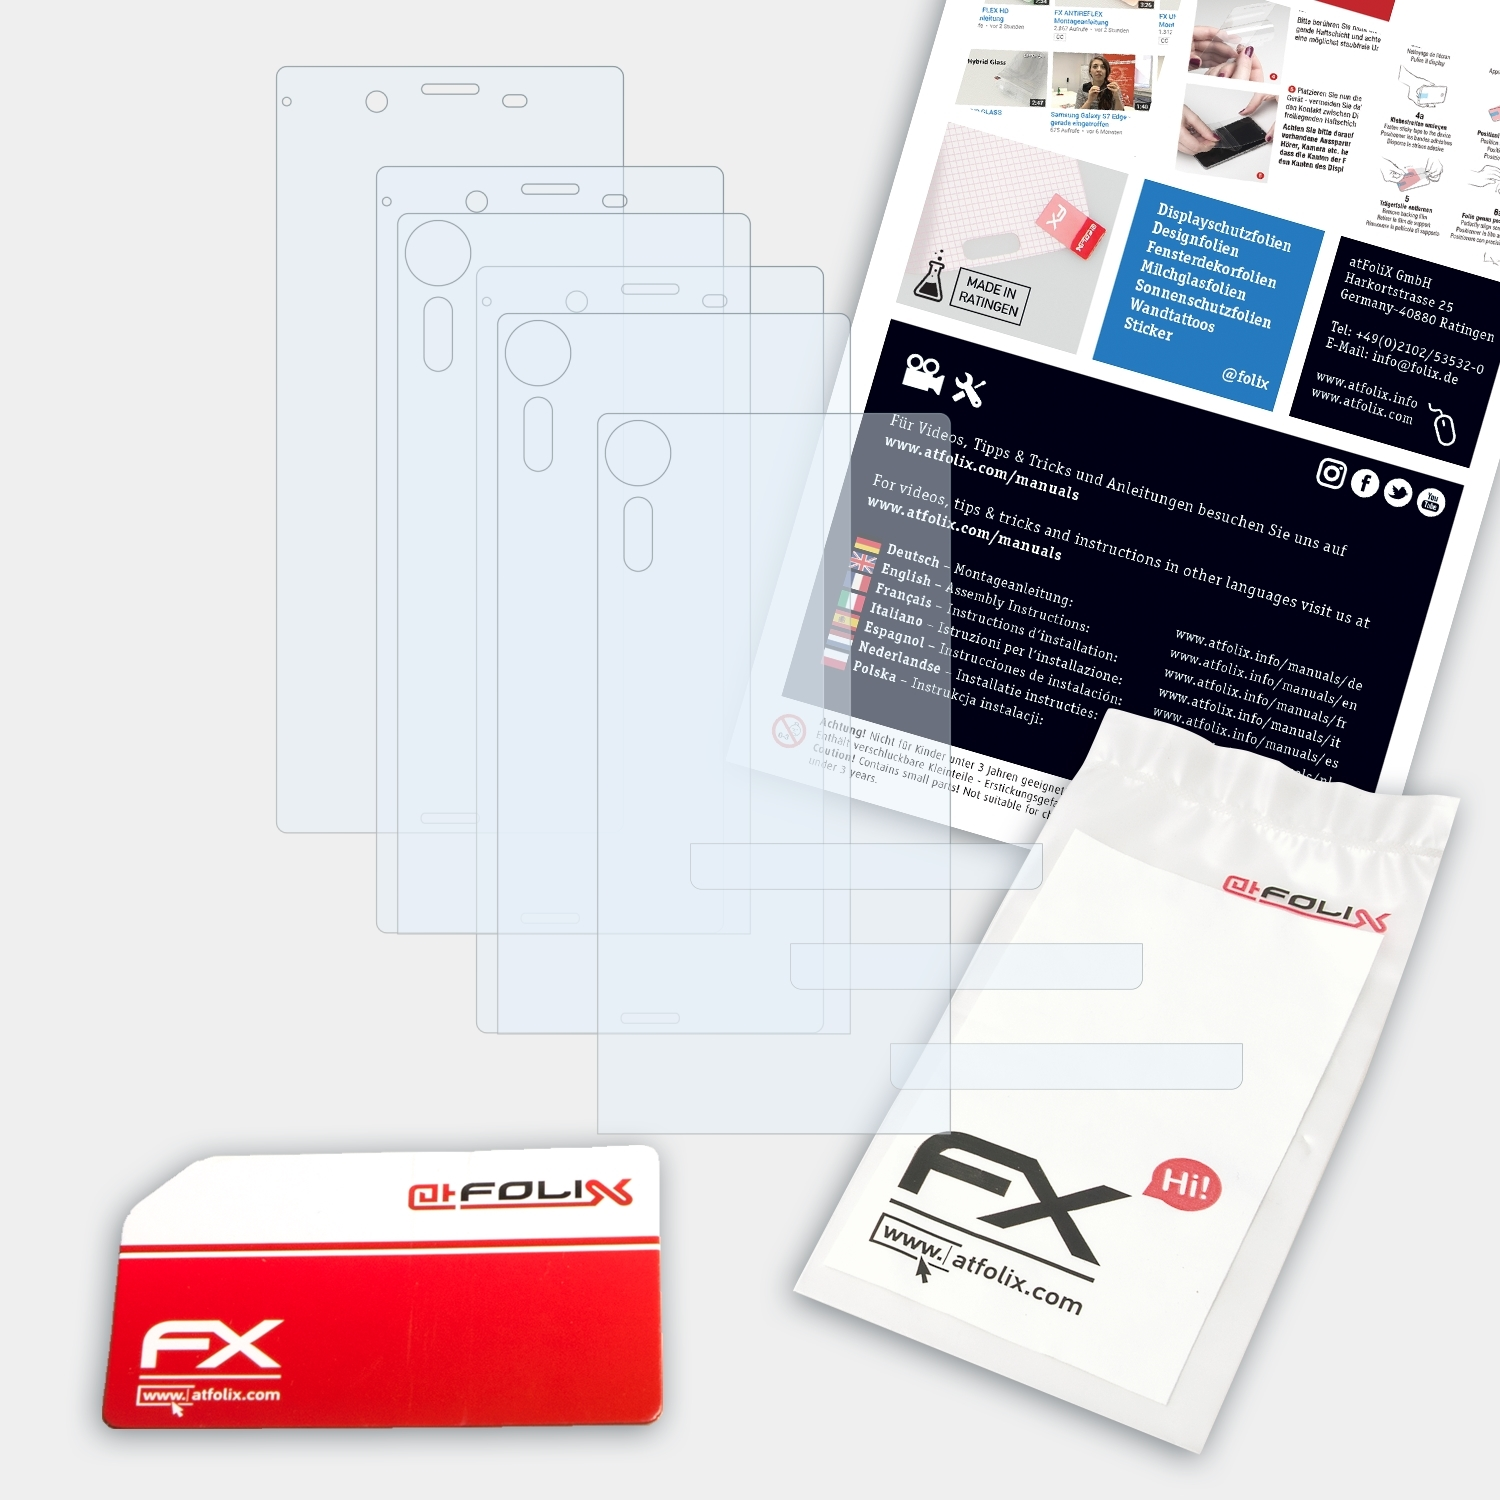 FX-Clear Sony Xperia XZs) ATFOLIX Displayschutz(für 3x